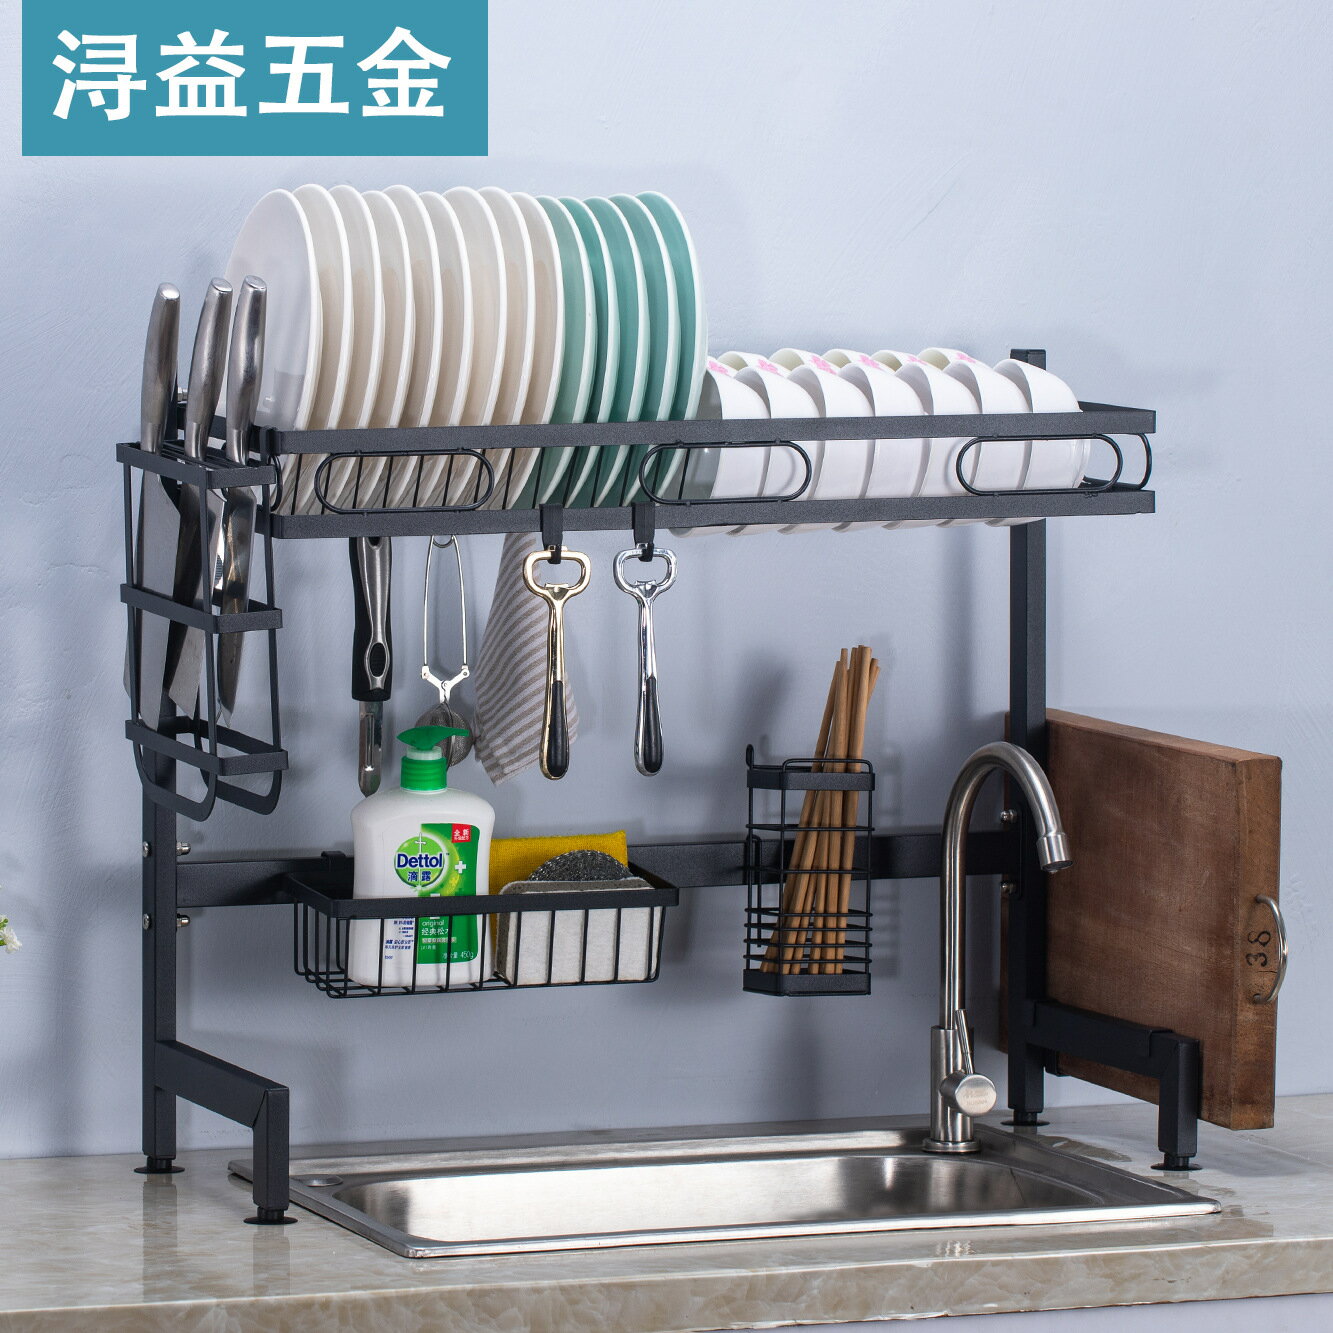 單雙層款式廚房水槽架 碗碟架 多功能碗筷收納架置物架